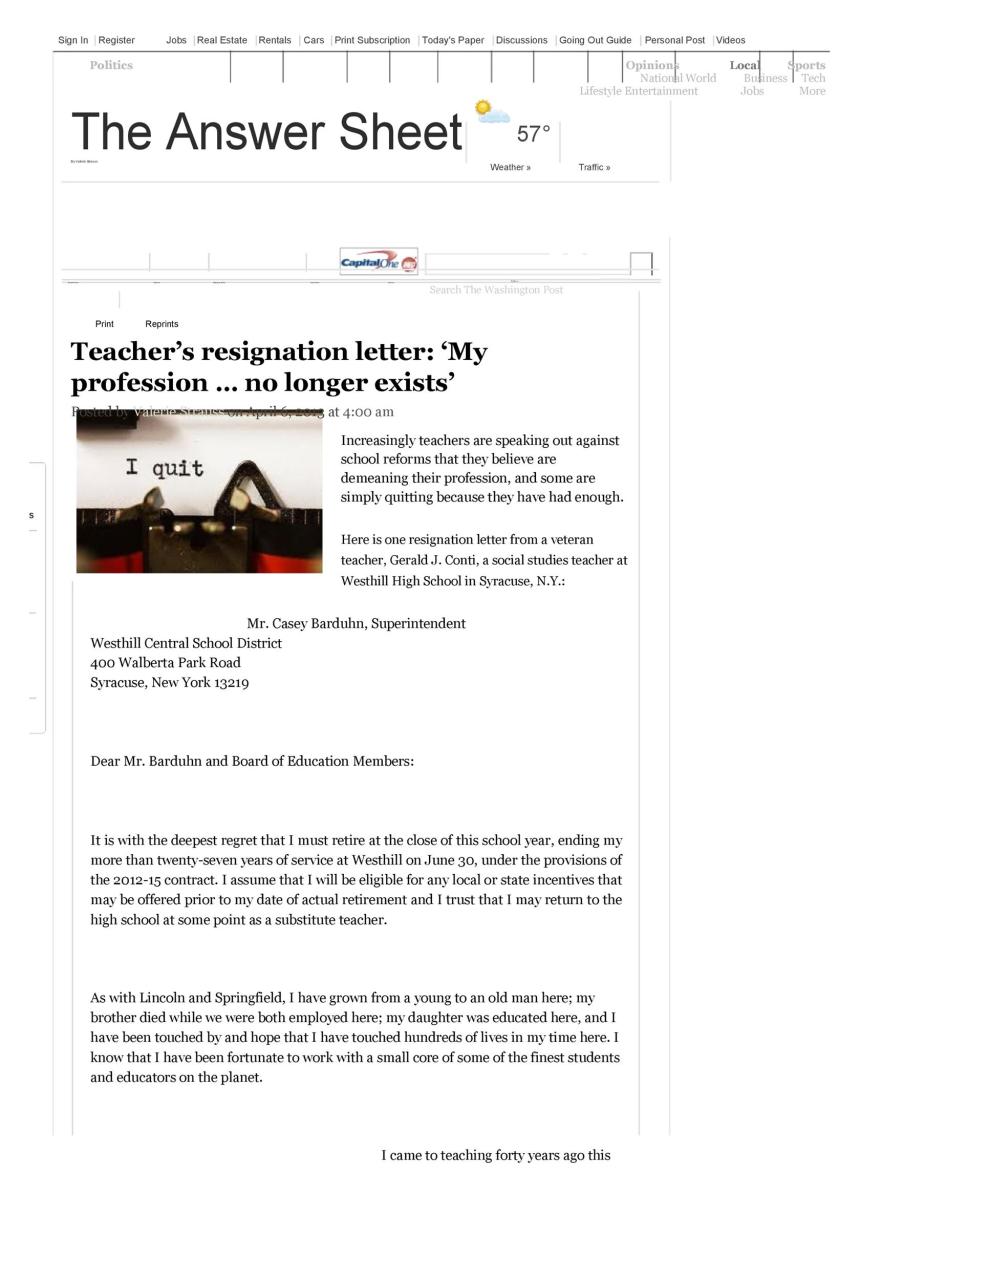 lettre de démission gratuite d'un enseignant 38